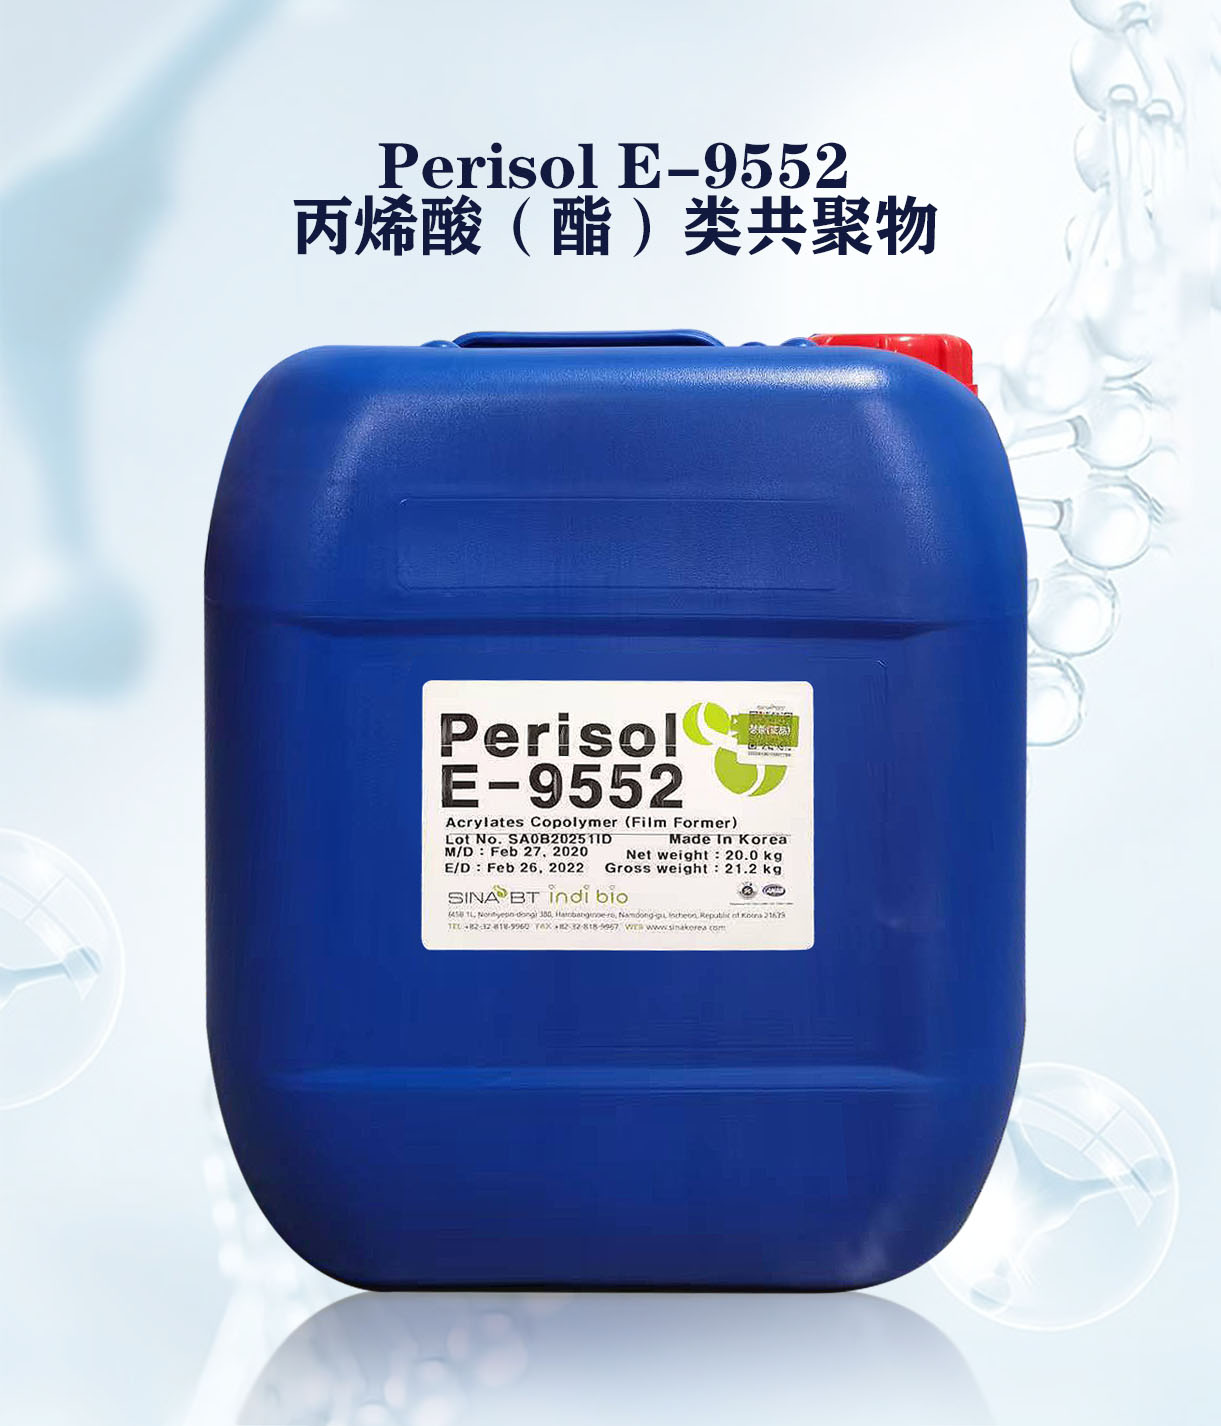 PeriSol E-9552